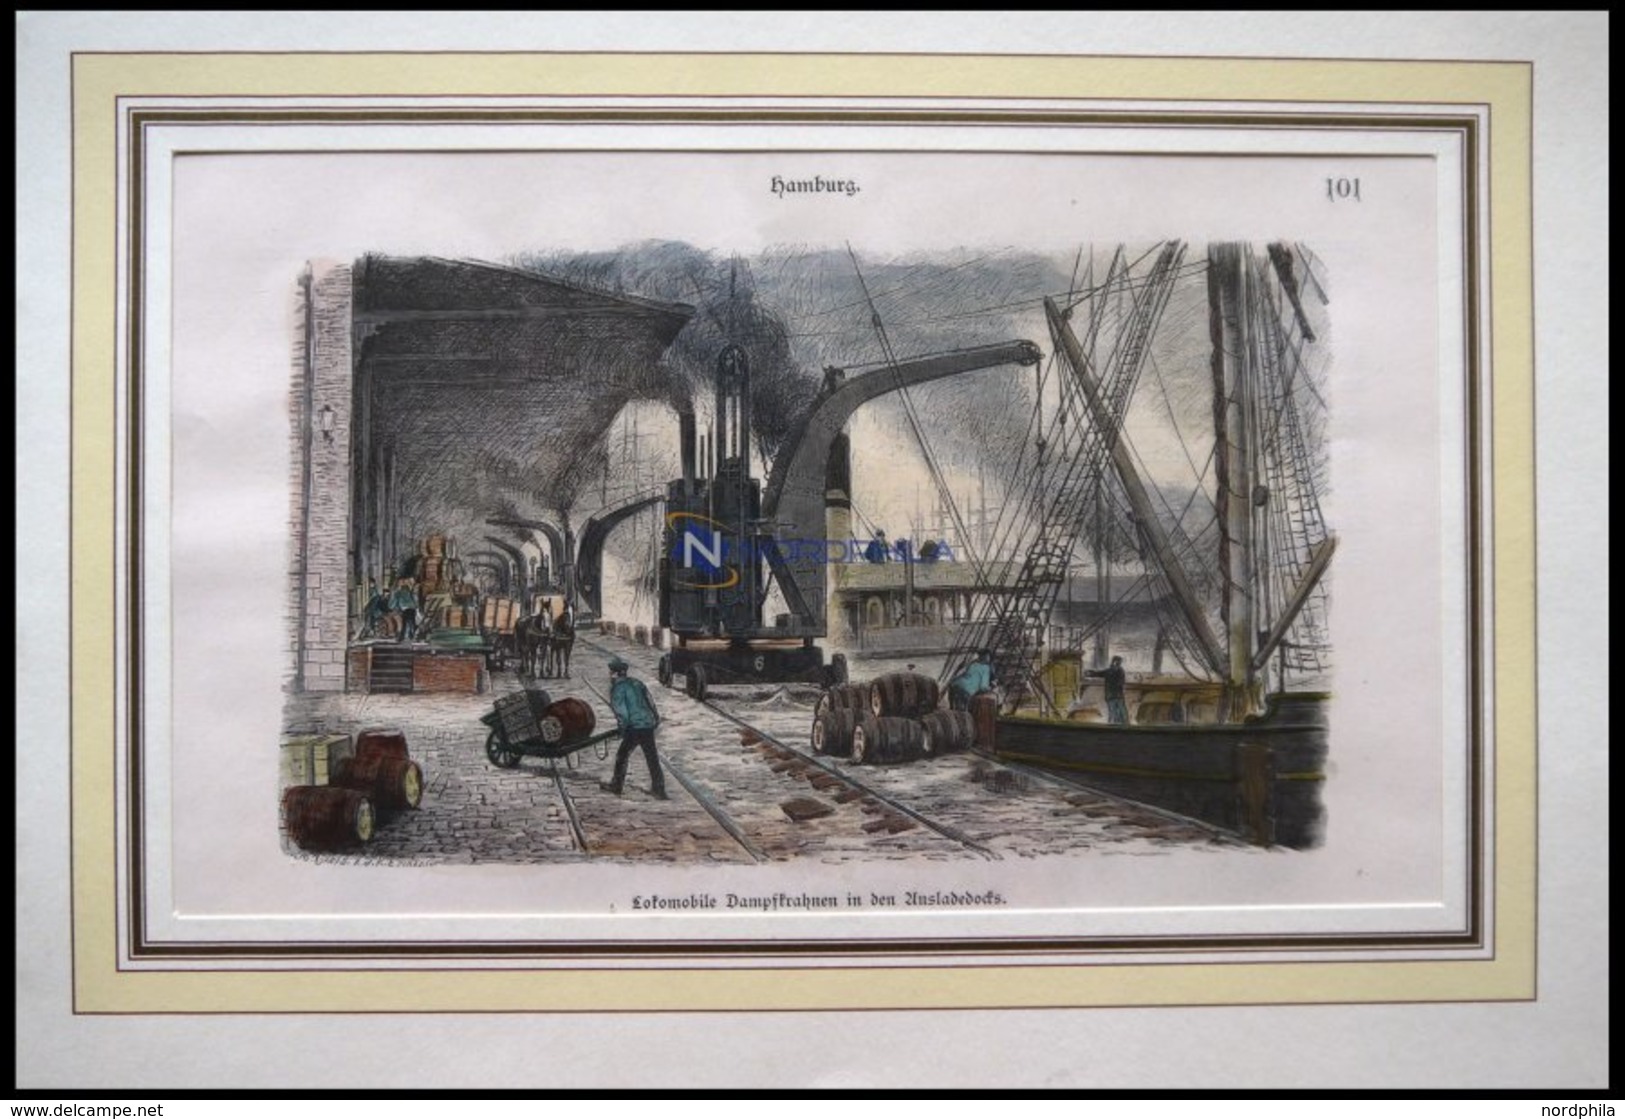 HAMBURG: Lokomobile Dampfkrahnen In Den Ausladedocks, Kolorierter Holzstich Von 1881 - Litografía